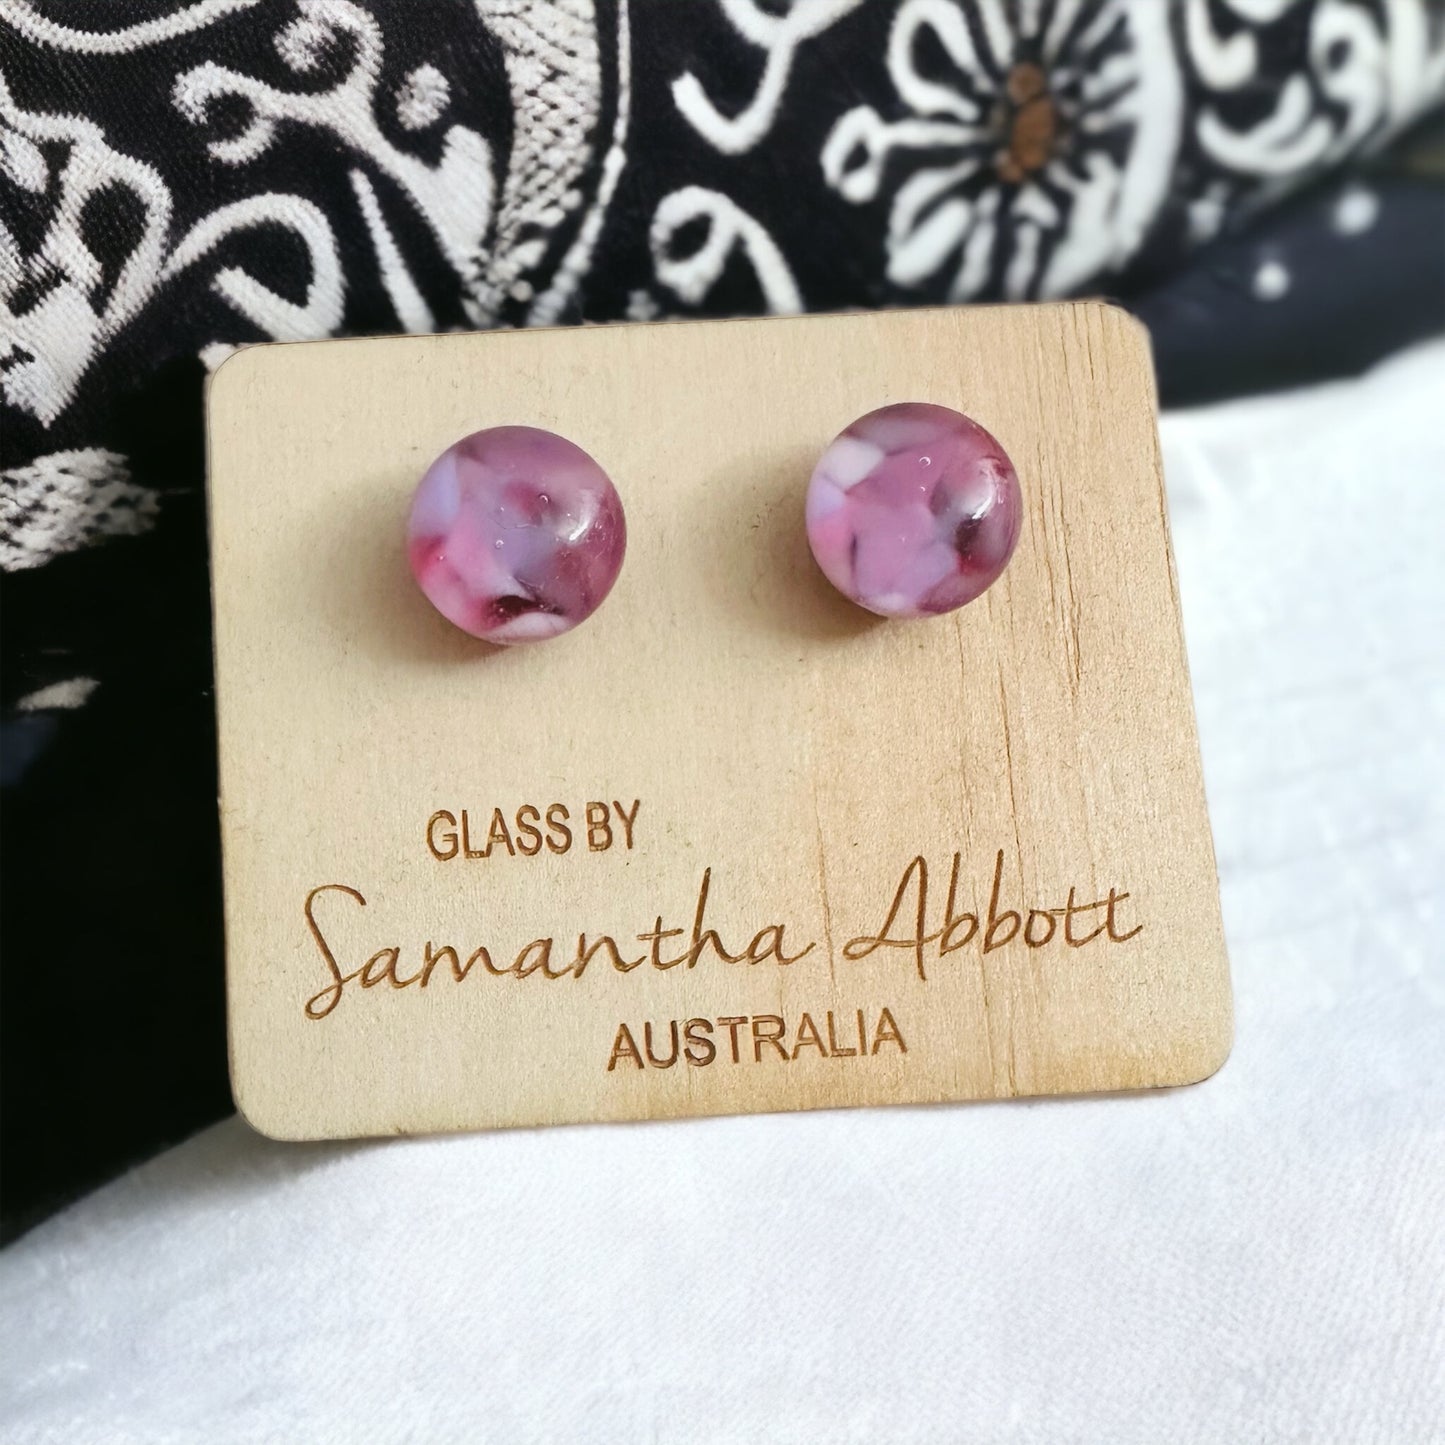 Samantha Abbott Glass Stud Earrings #9